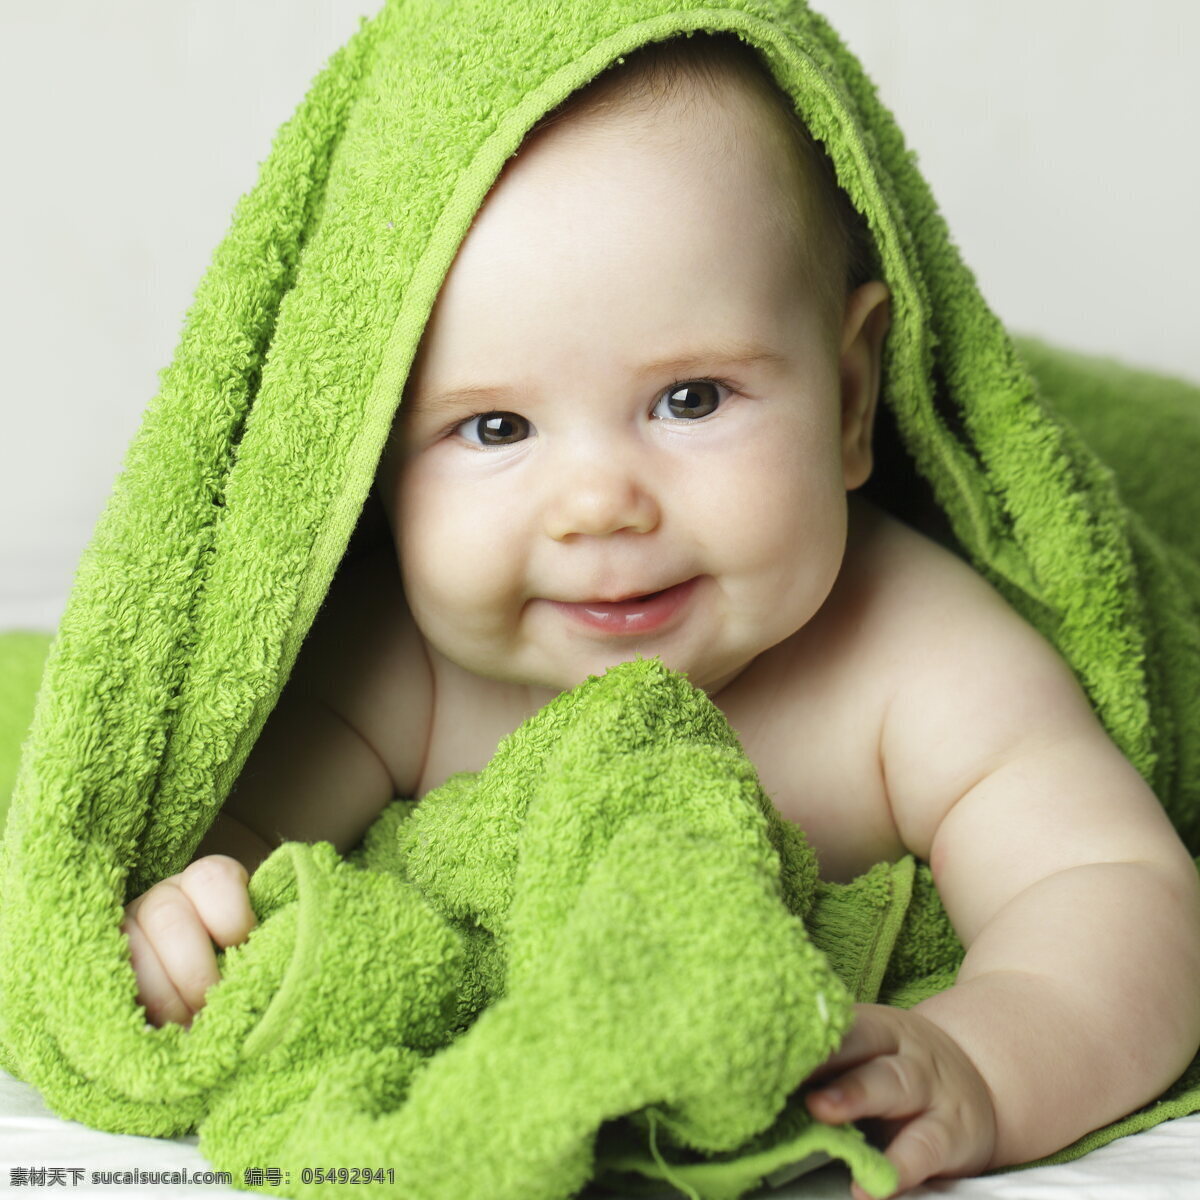 可爱 婴儿 写真图片 宝宝 毛巾 萌宝宝